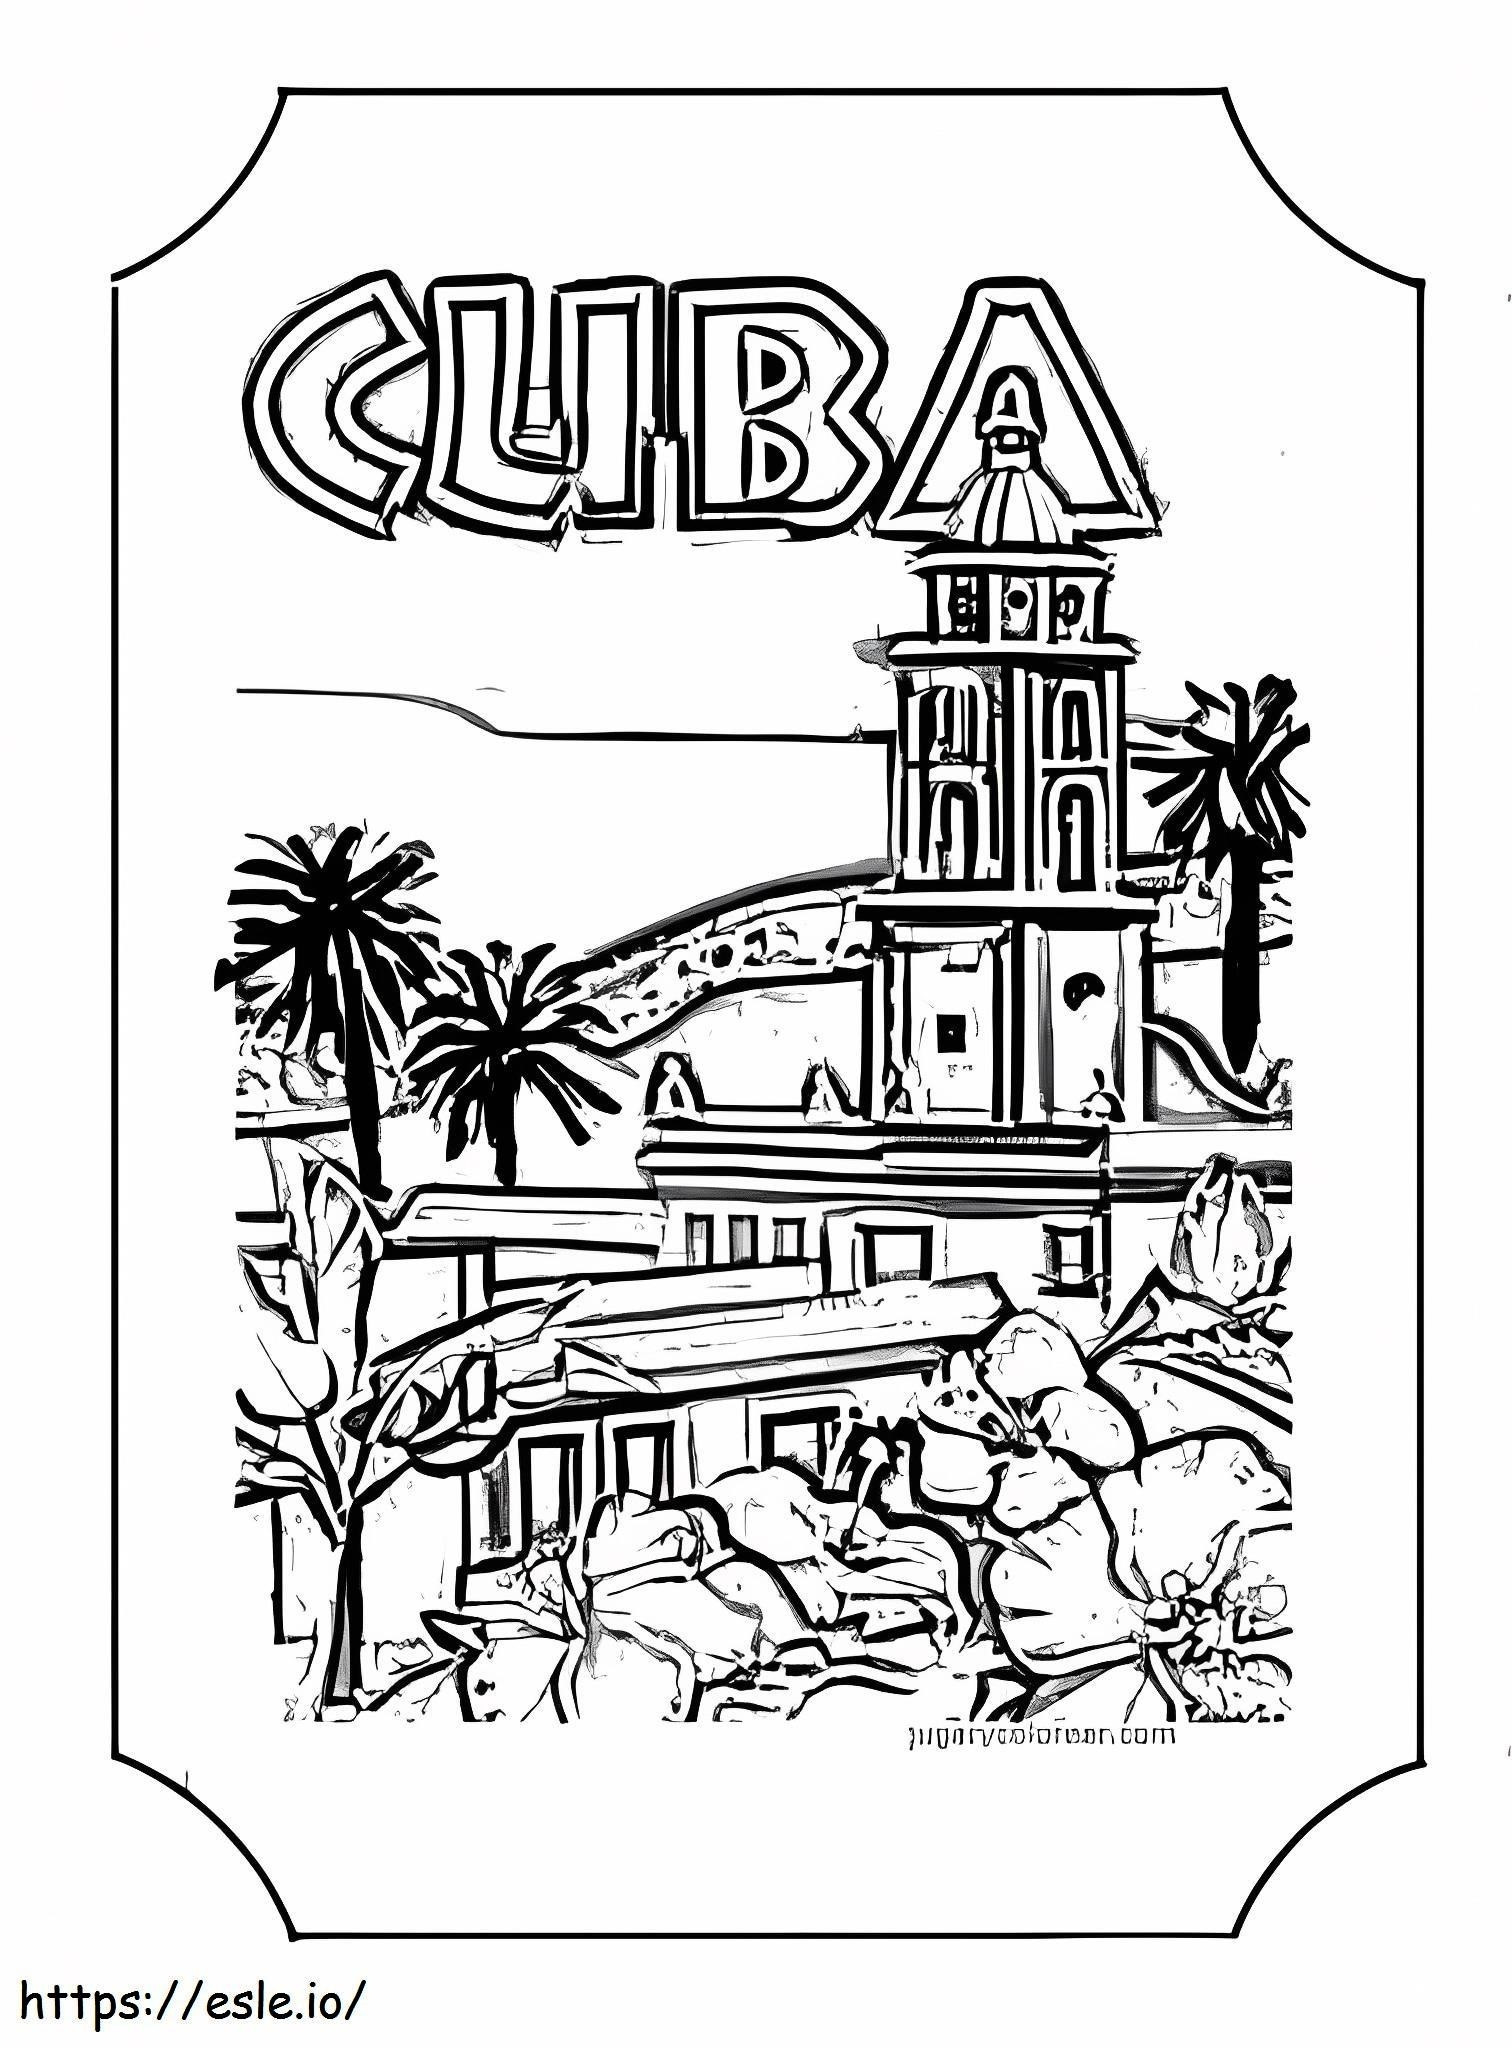 Cuba País para colorear